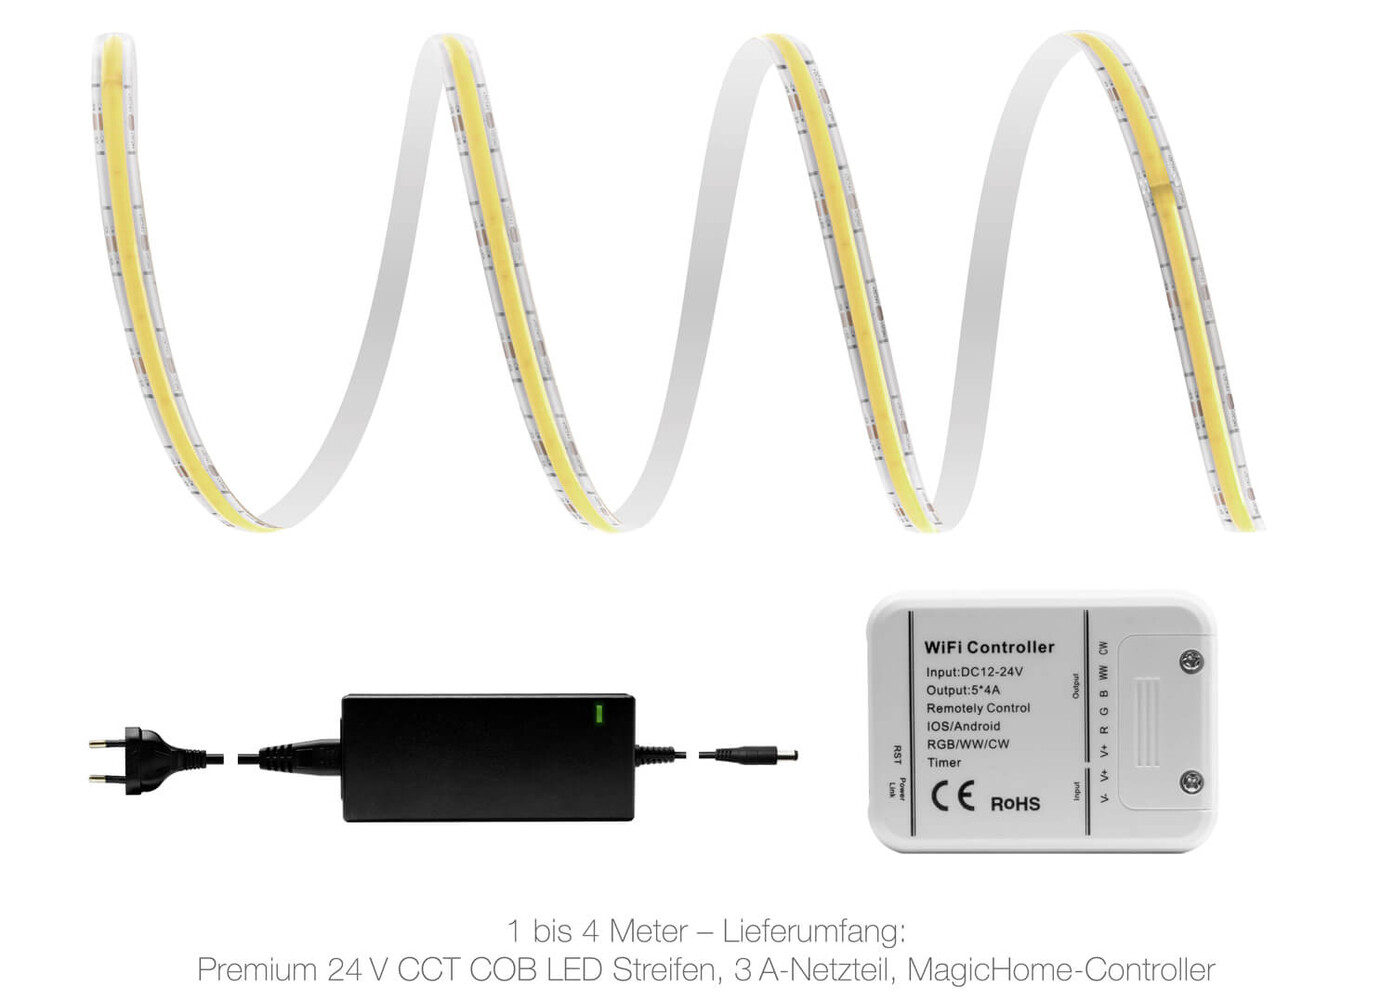 Hochwertiger, lebendiger LED Streifen von LED Universum mit Premium-Qualität und IP65 Schutzklasse